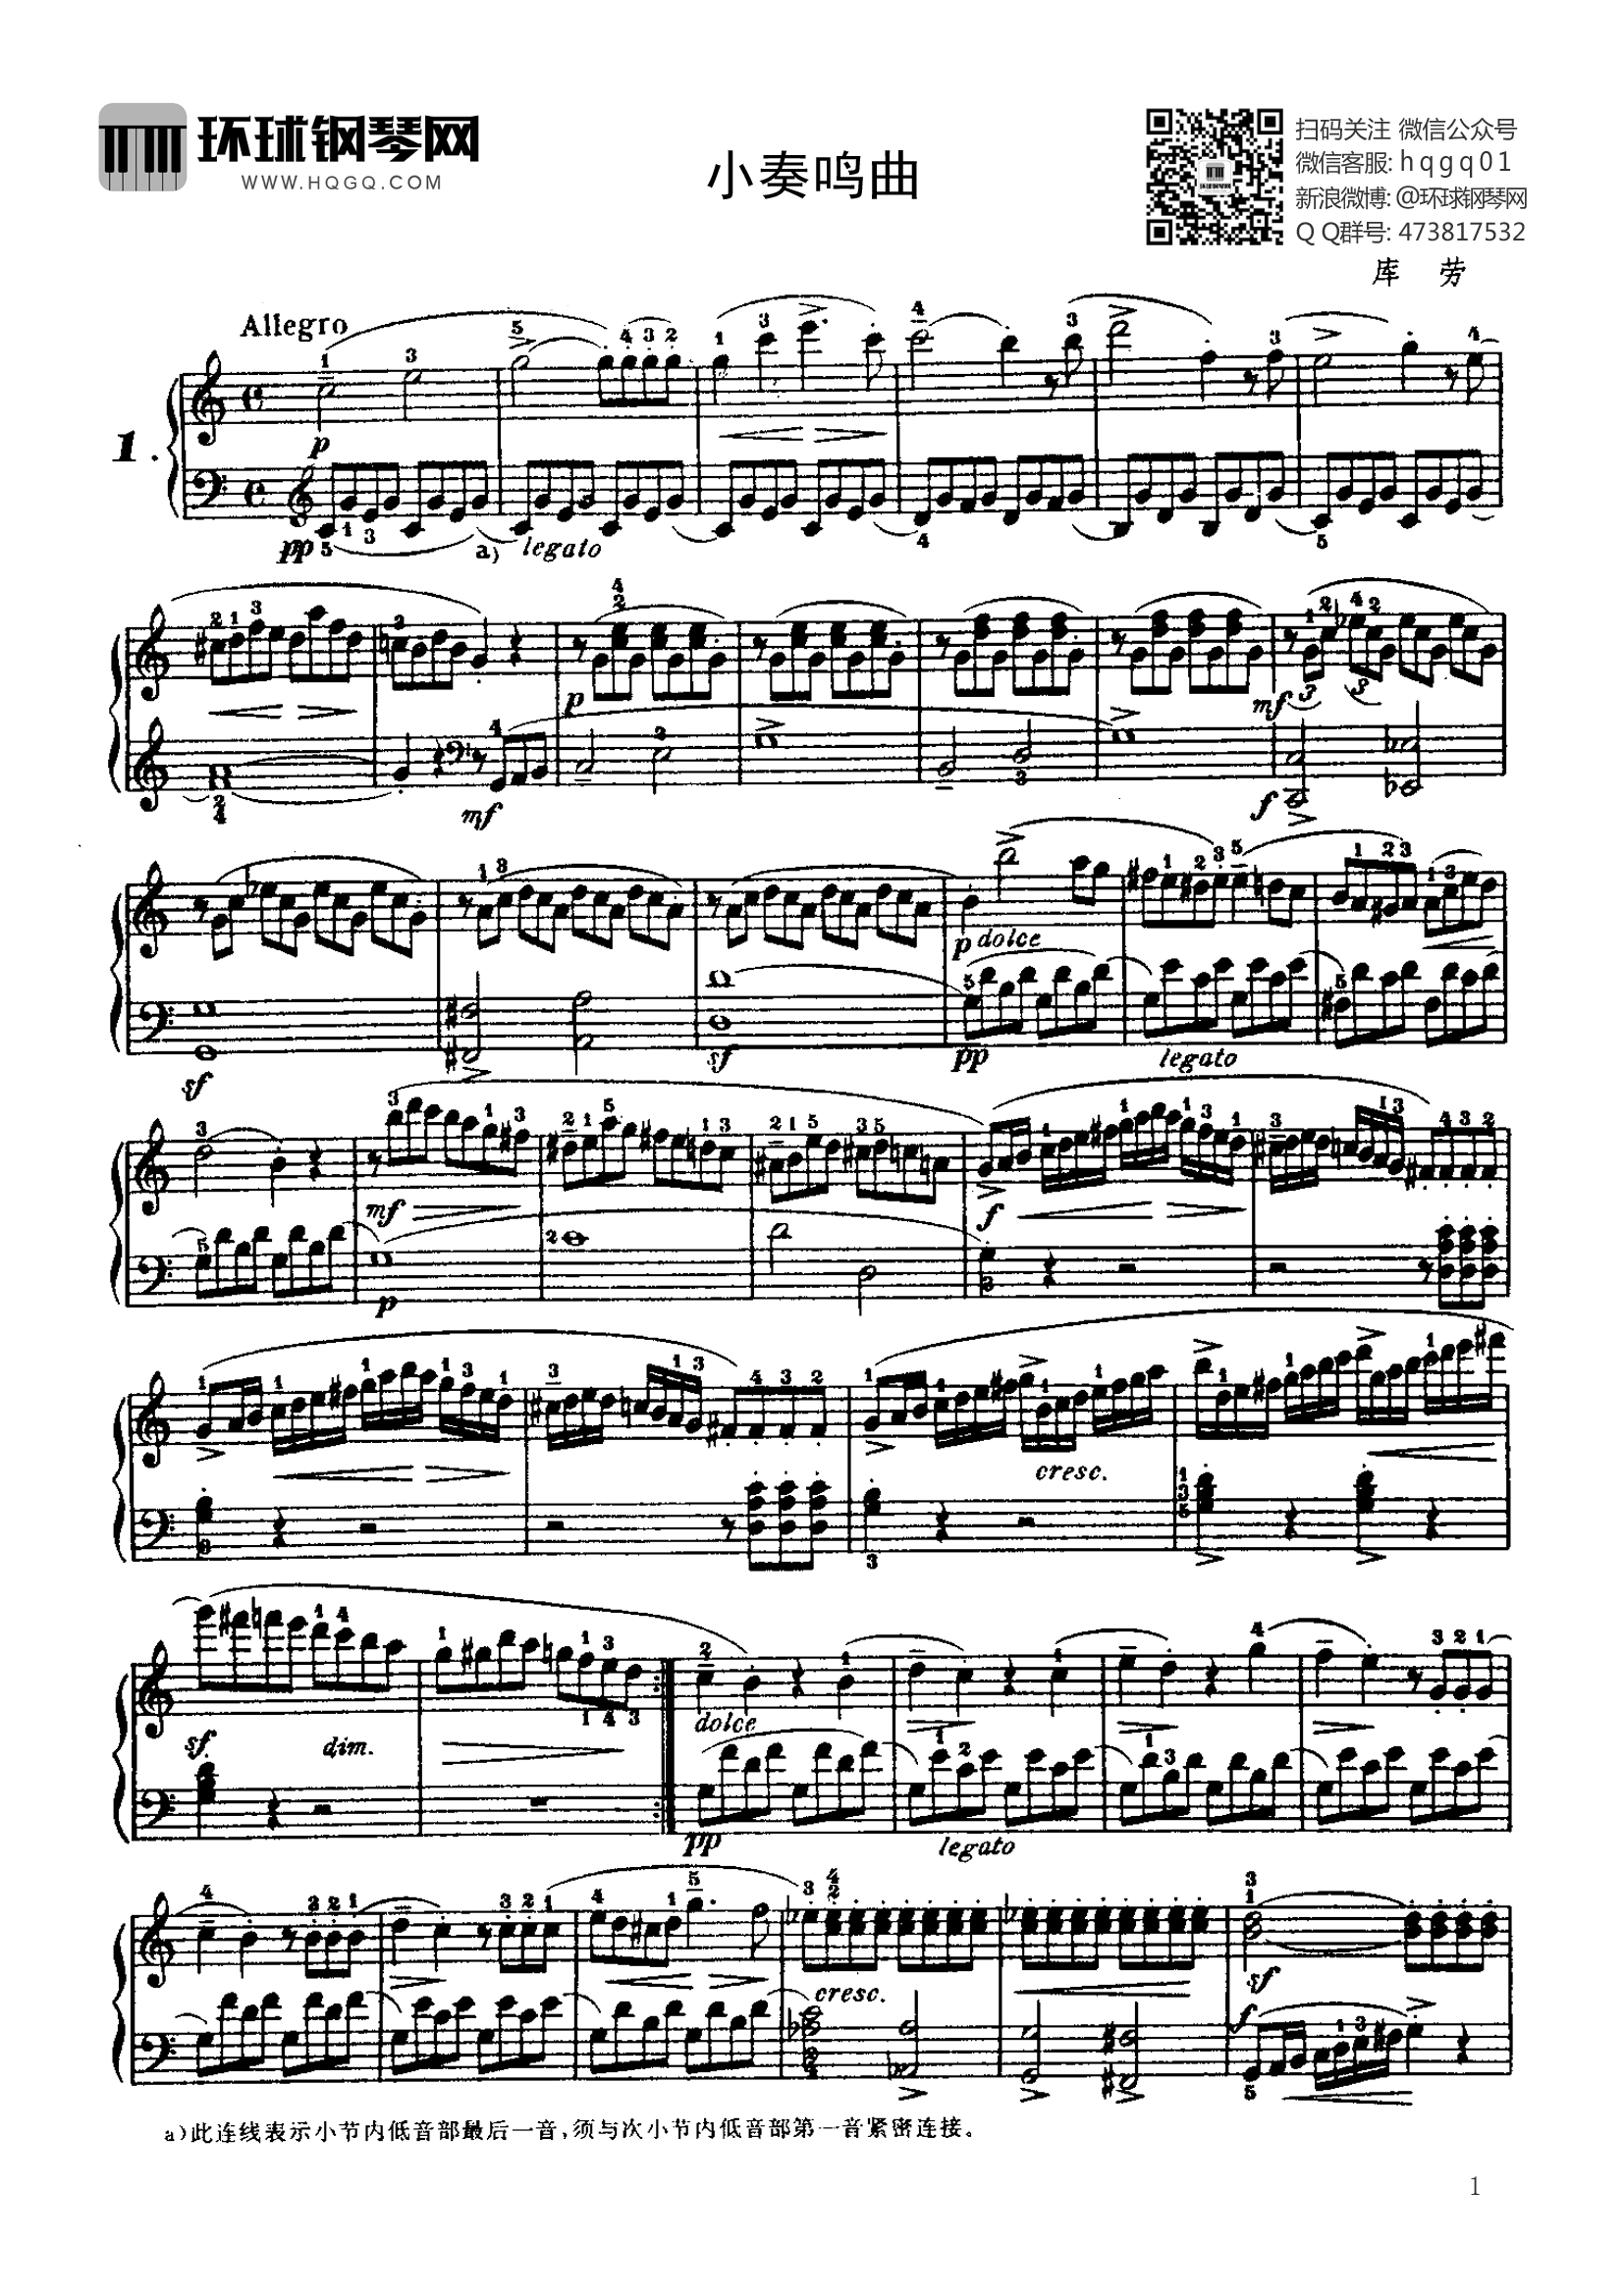 钢琴考级曲目三级小奏鸣曲斯宾德勒(钢琴四级考级曲小奏鸣曲)